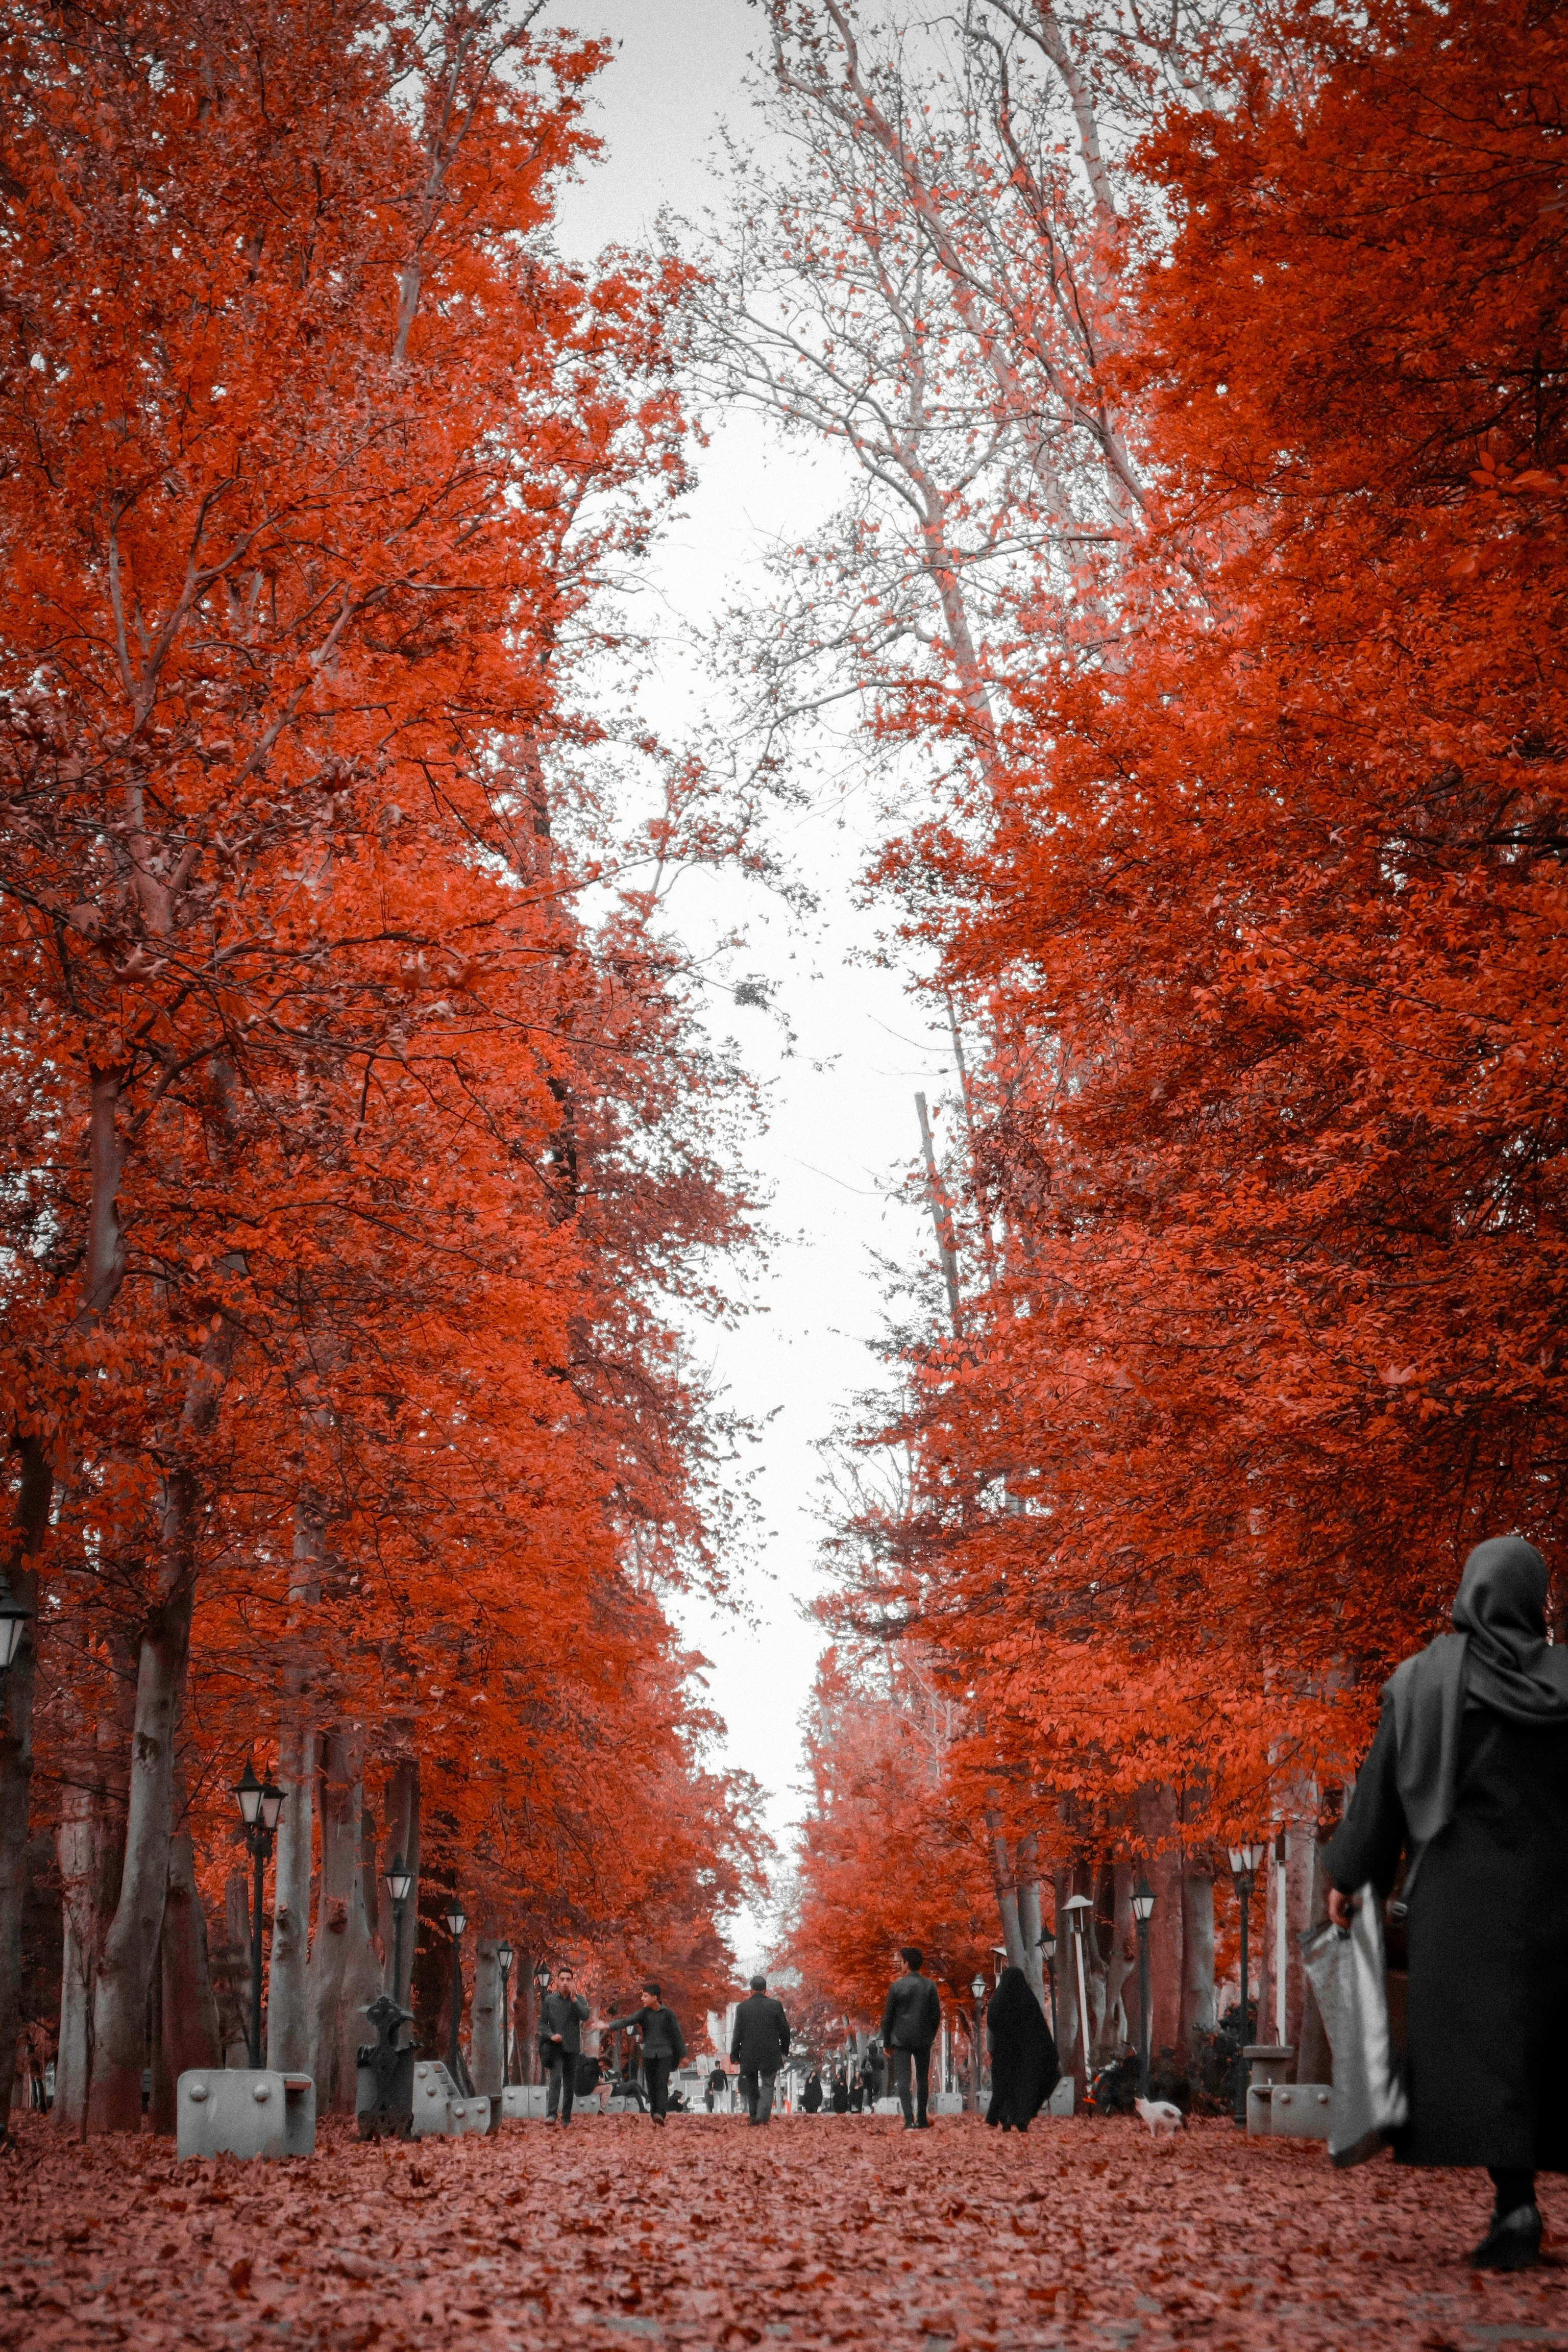 people walking on pathway between trees